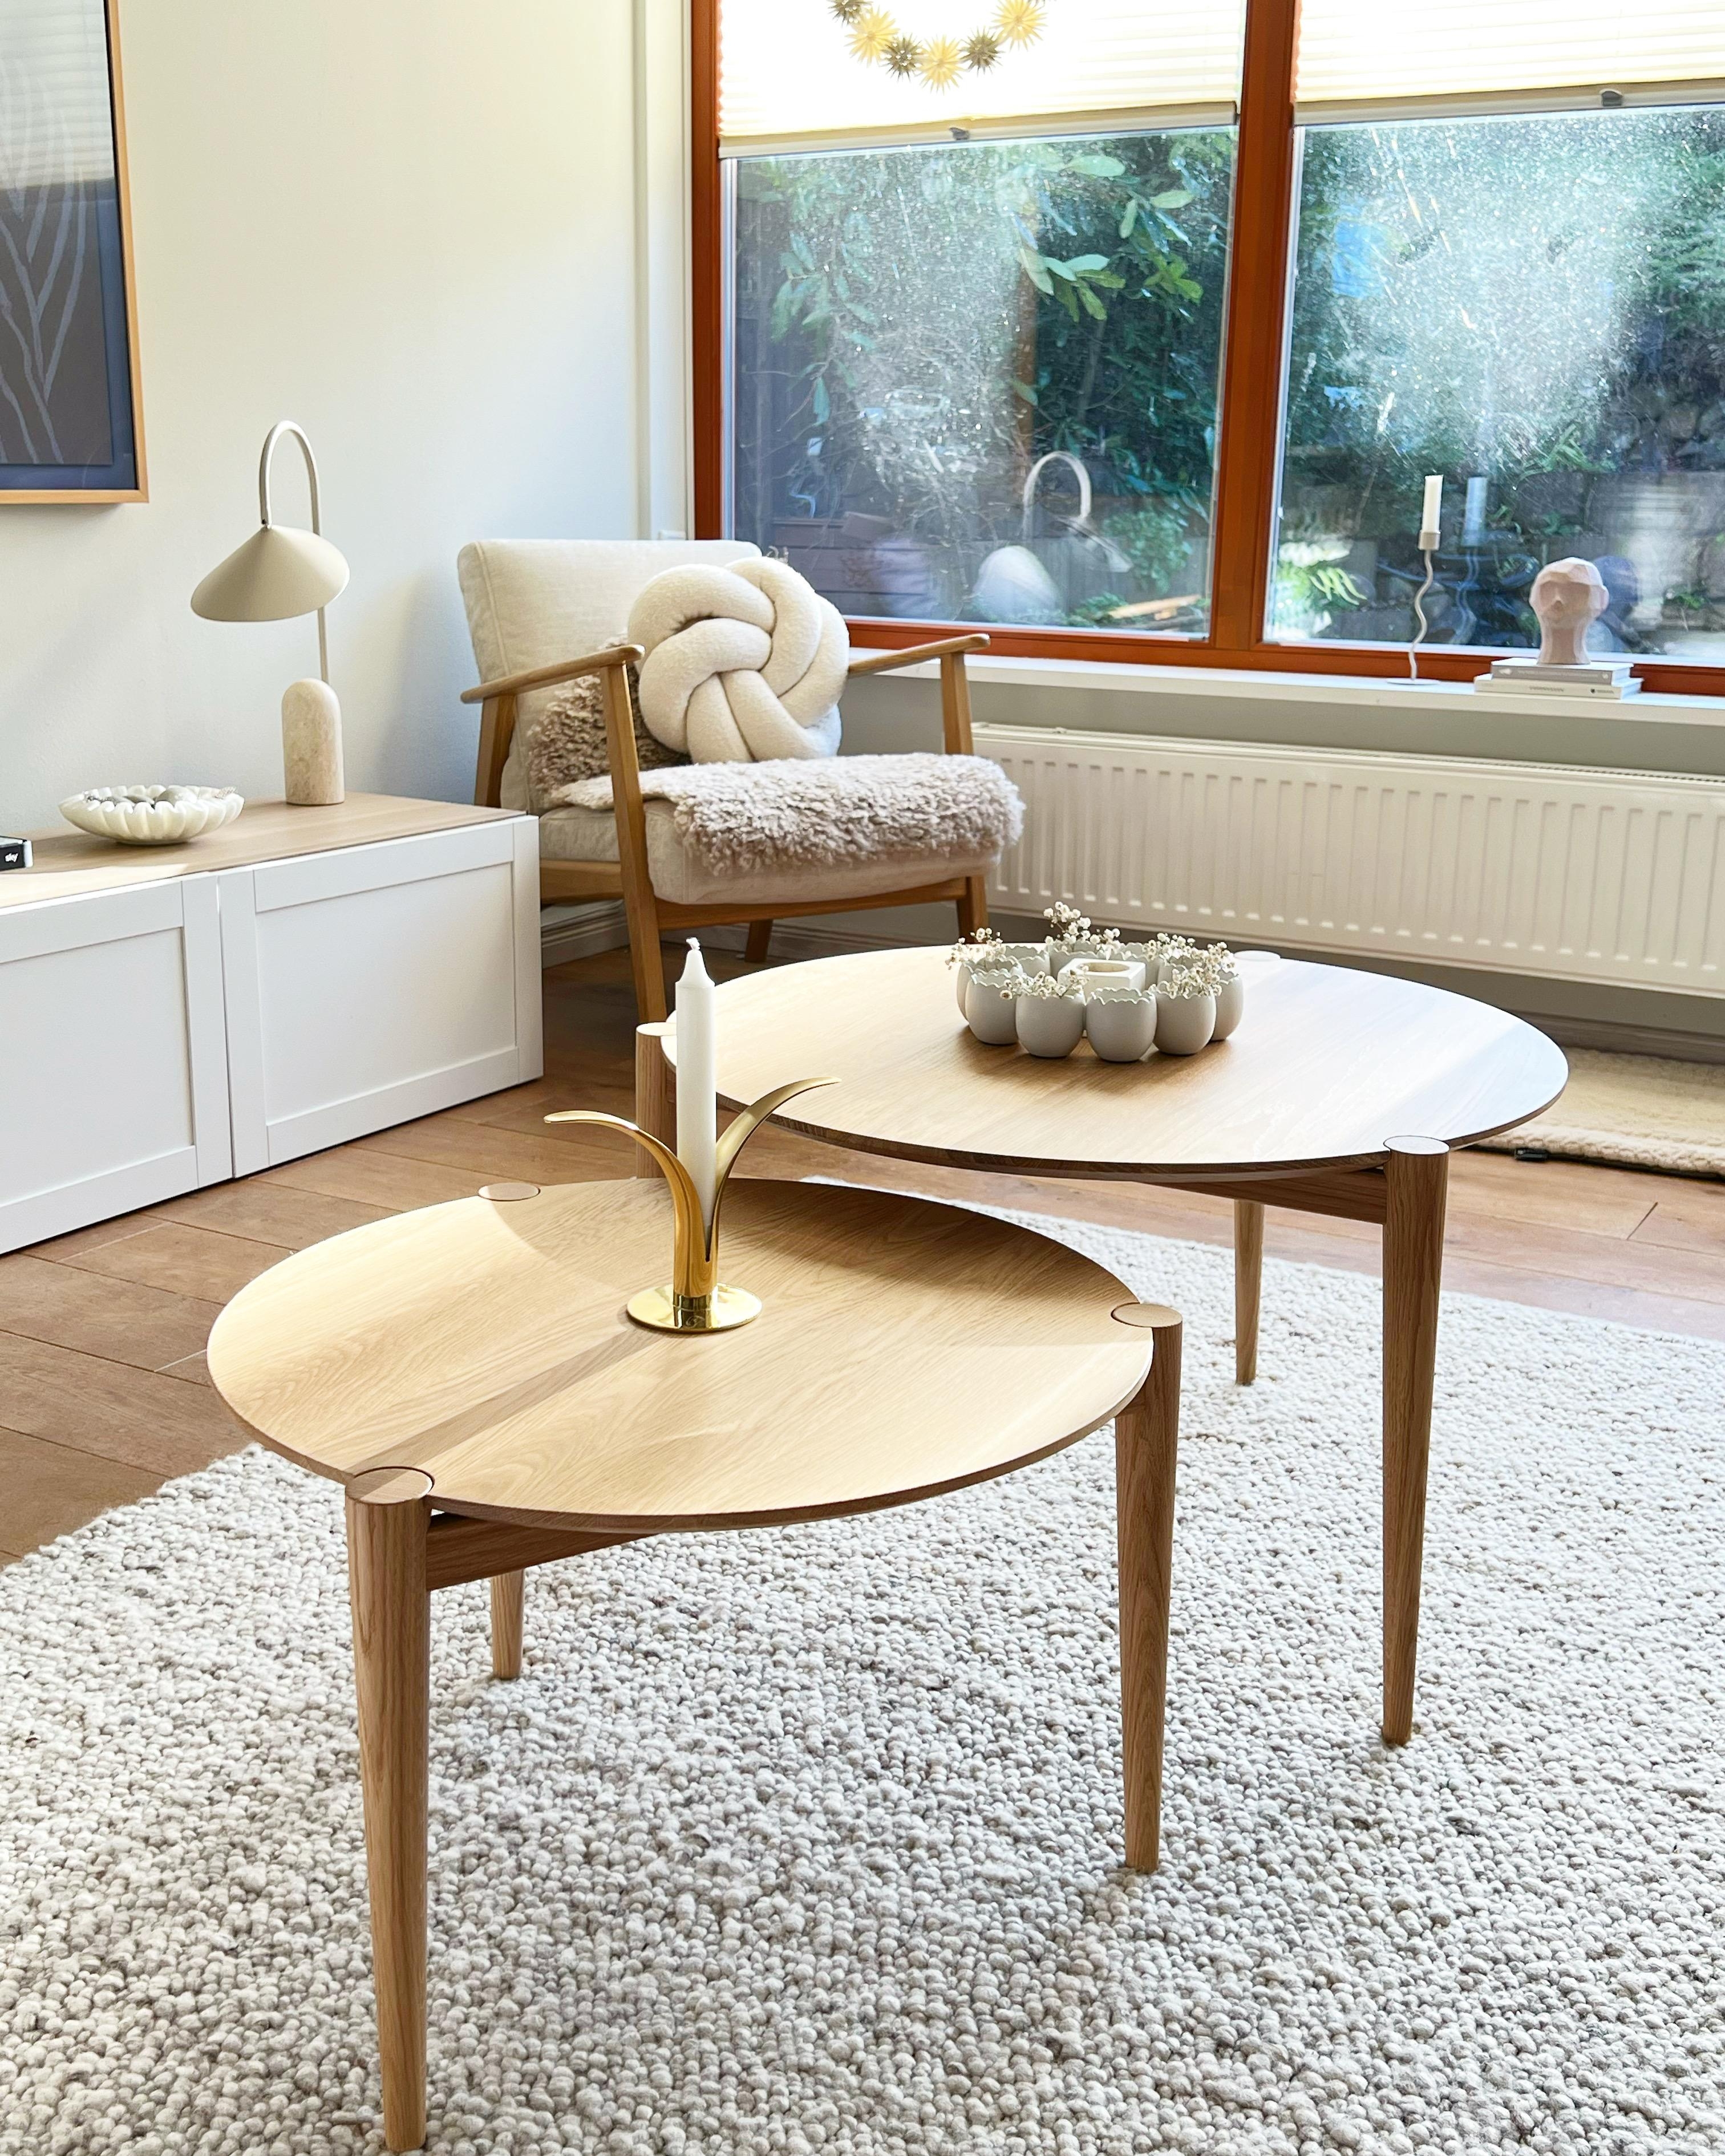 Verliebt in die neuen Couchtische #scandistyle #fdbmøbler #wohnzimmer #lieblingsplatz